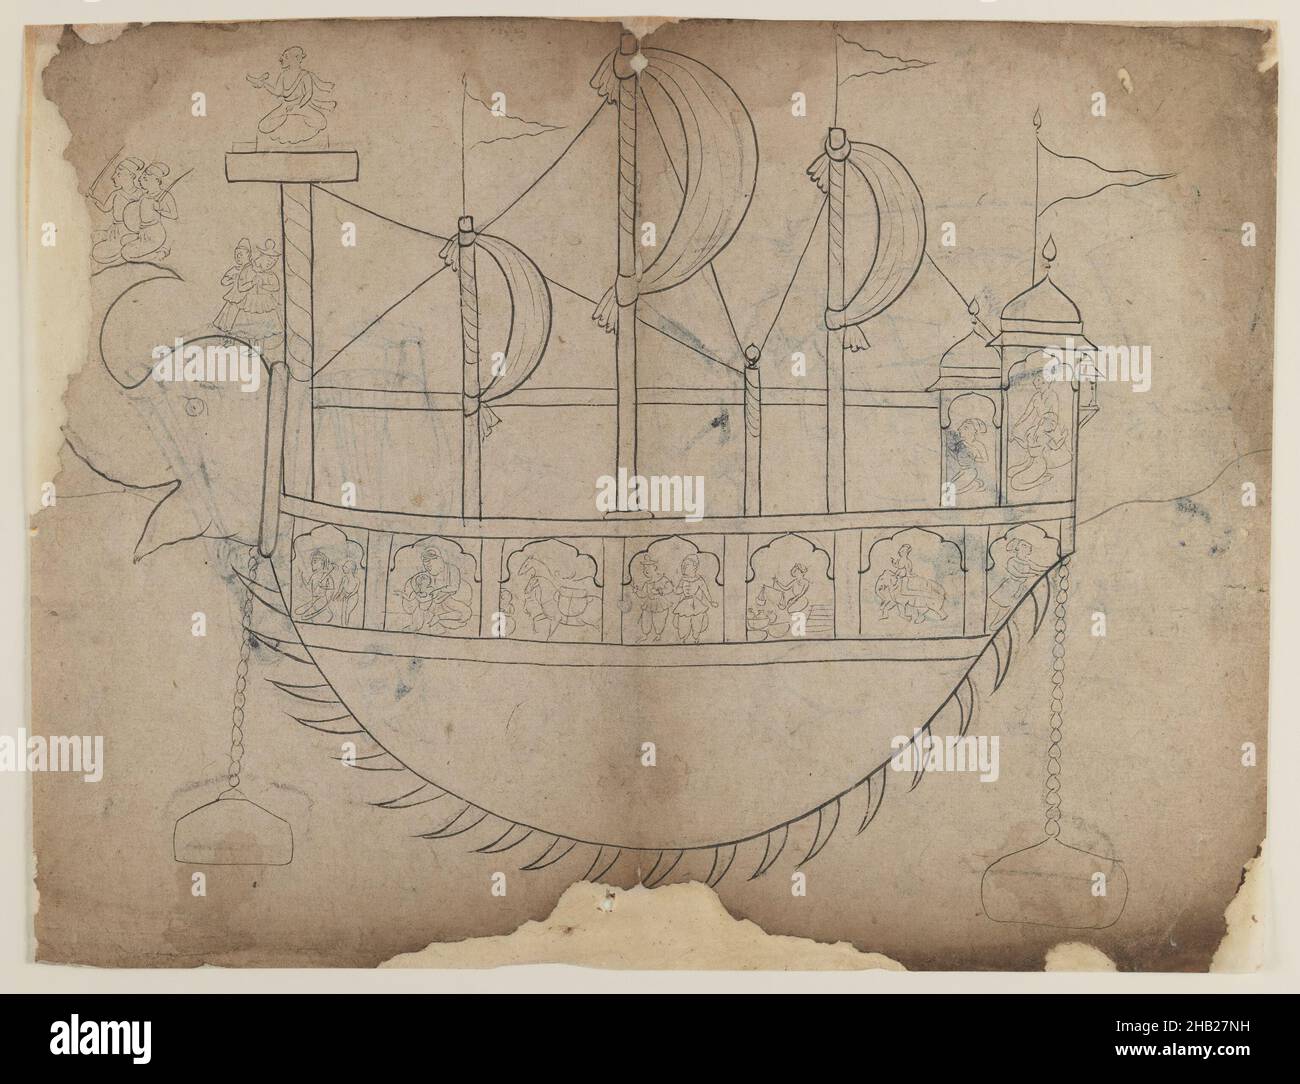 Linienzeichnung eines phantasievollen Bootes, indisch, Tinte und Kohle auf Papier, 19th Jahrhundert, Blatt: 8 5/8 x 11 5/8 Zoll, 21,9 x 29,5 cm Stockfoto